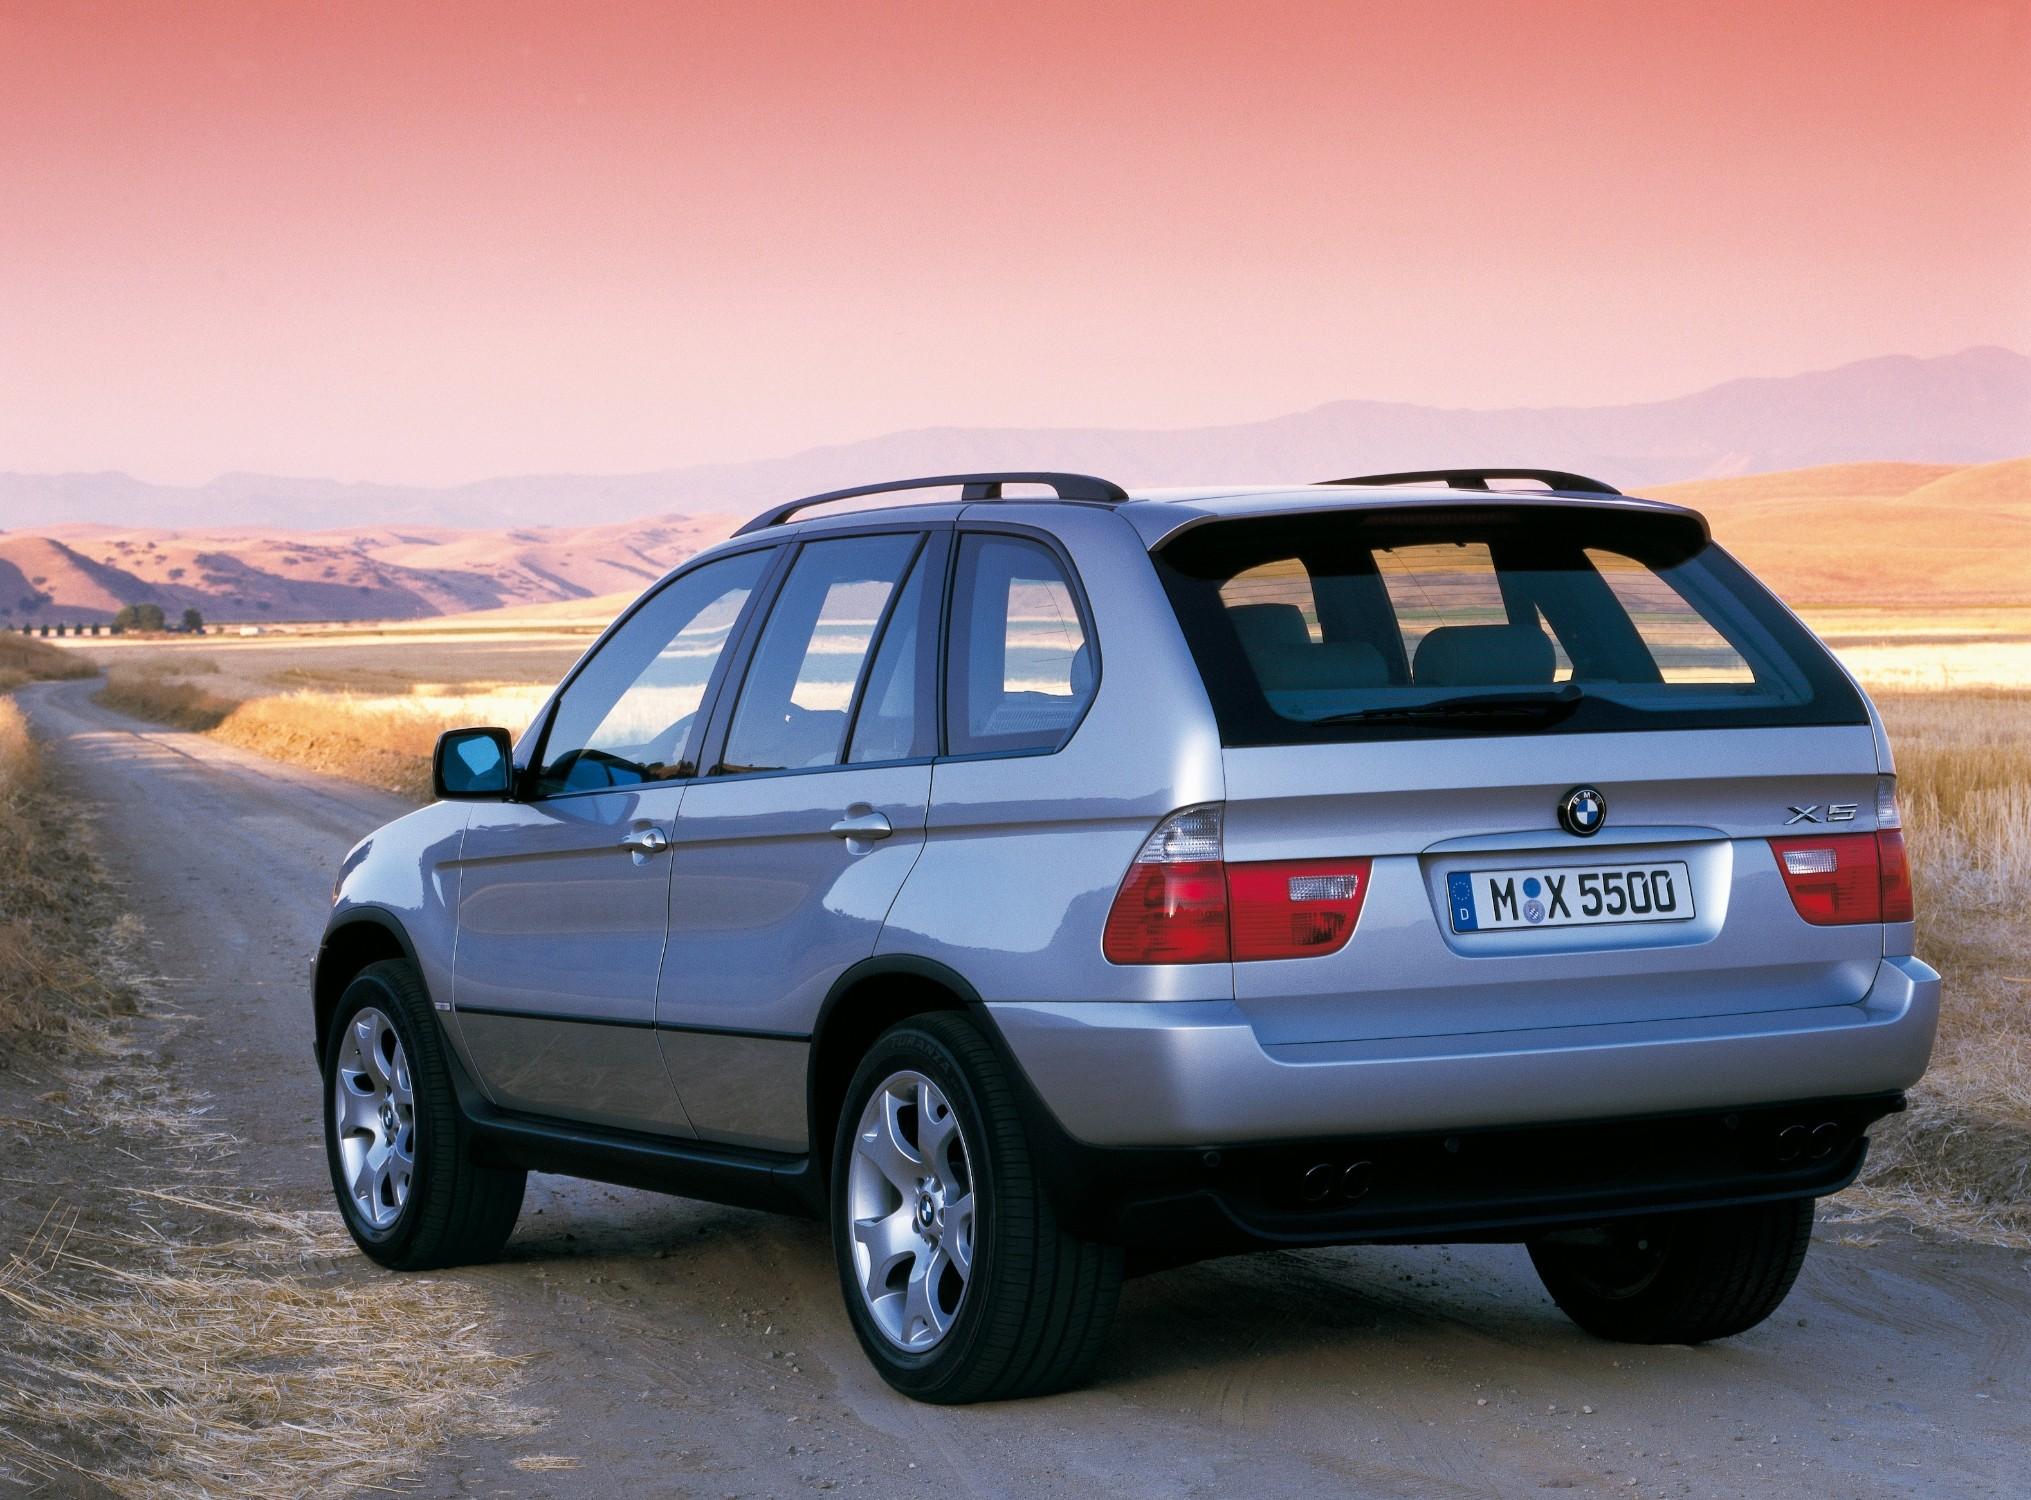 Купить авто BMW X5 в Казахстане. Покупка и продажа БМВ X5 — Колёса